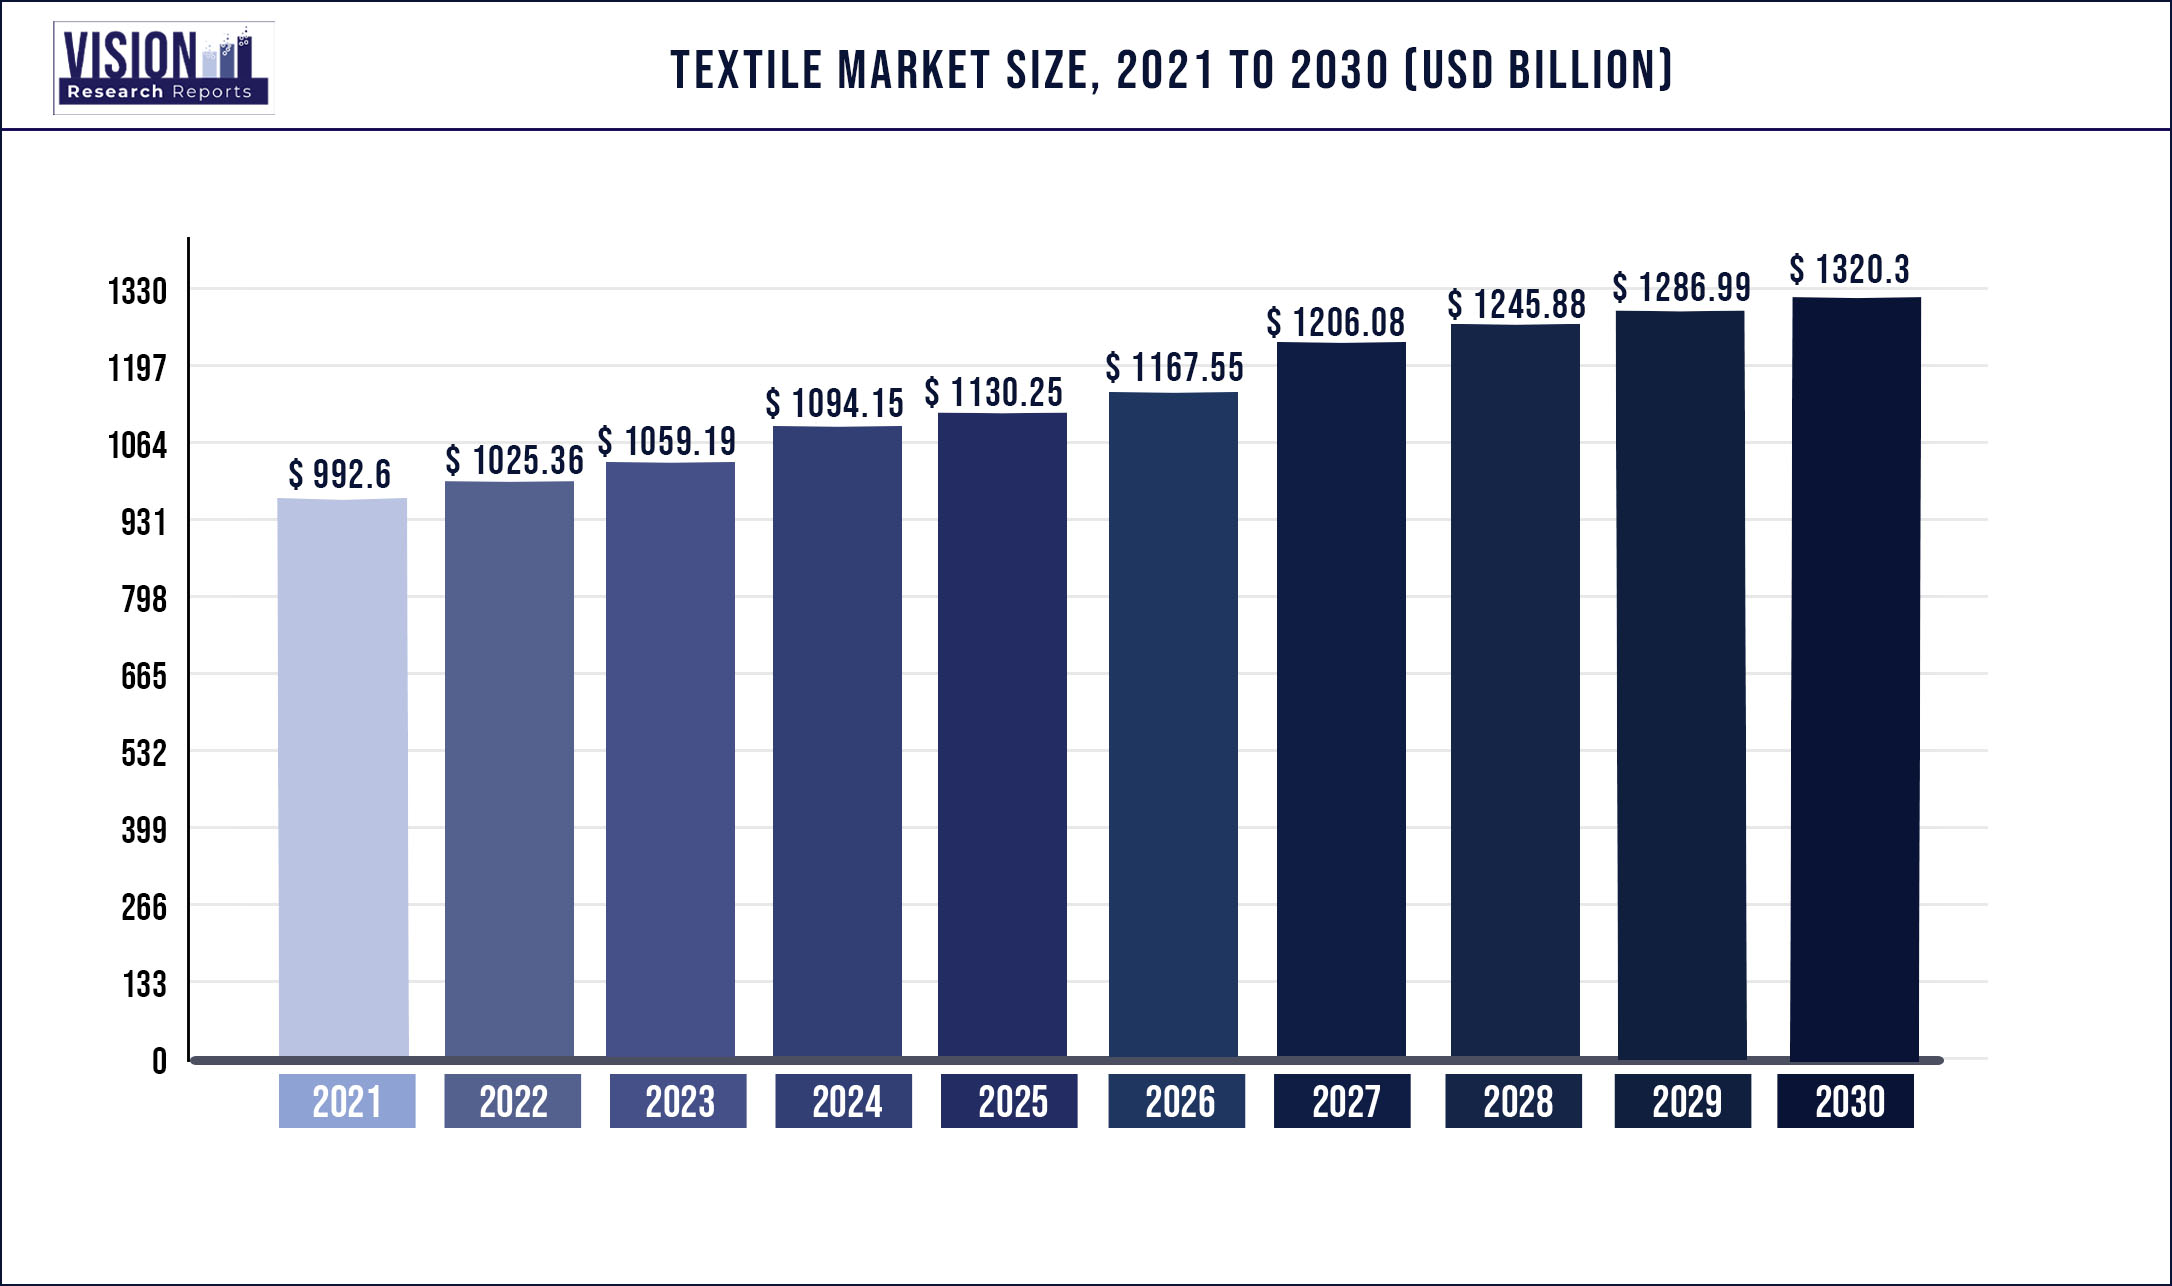 Textile Market Size 2021 to 2030